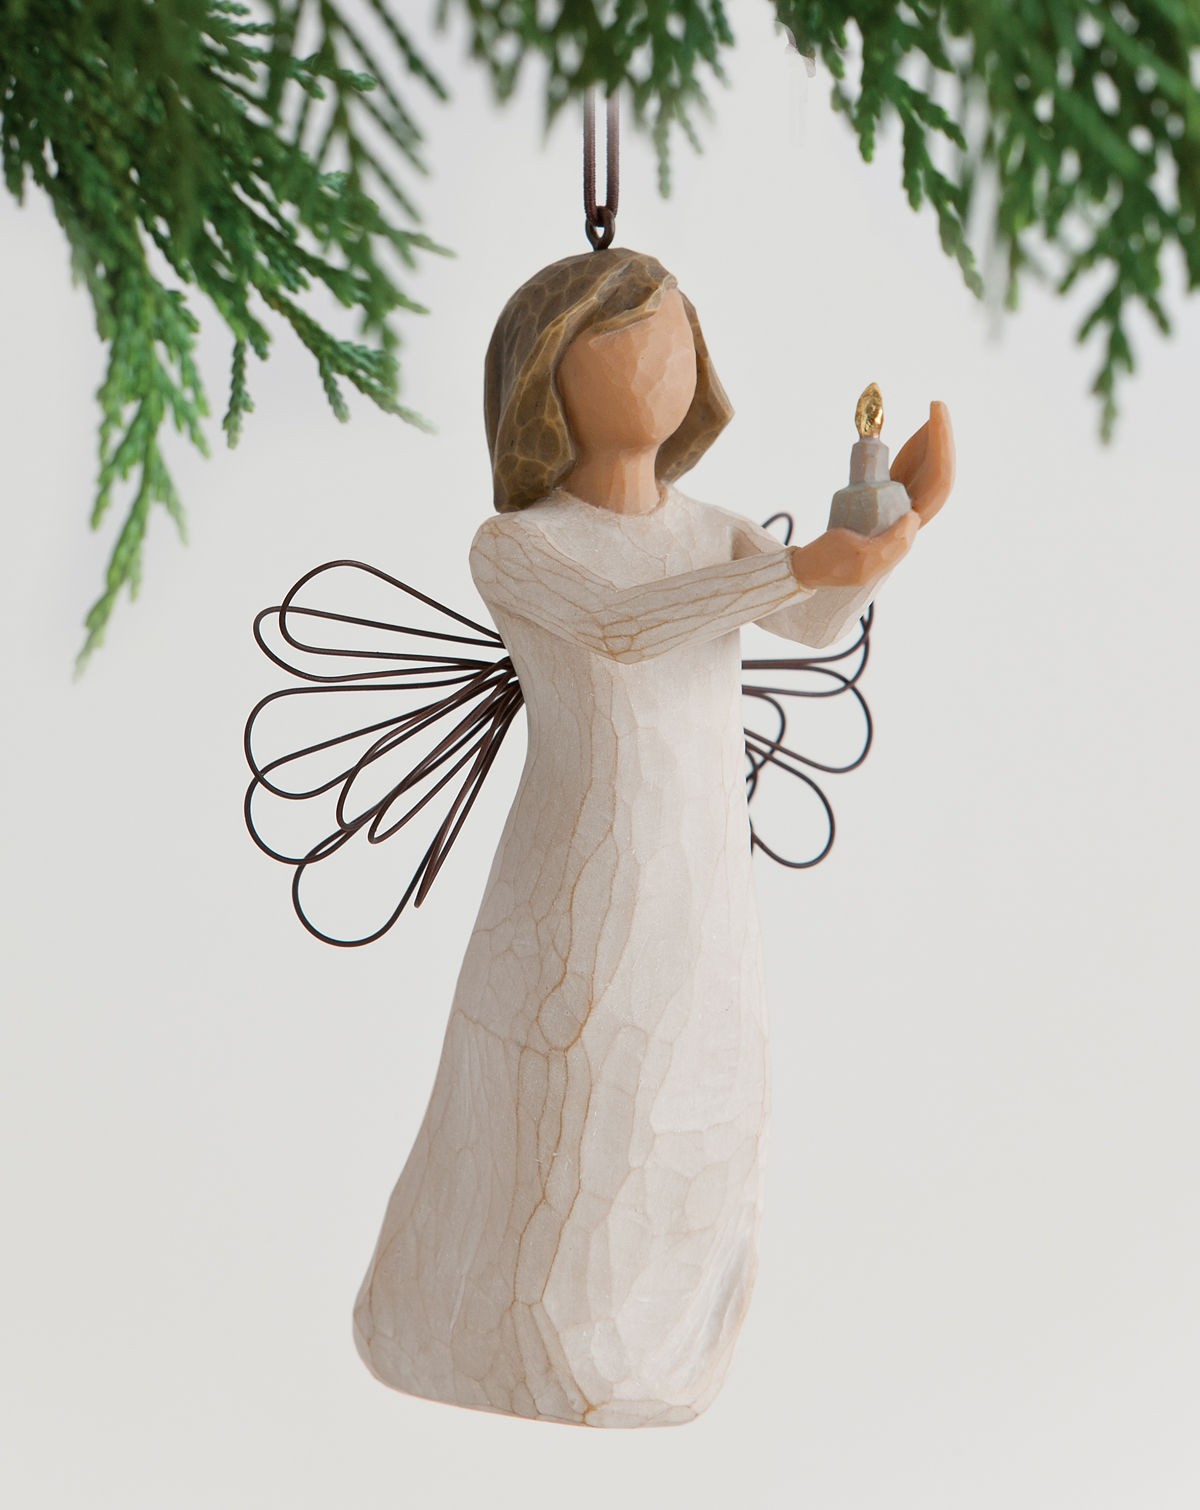 Willow Tree Angel of hope Ornament 26066 statuina da appendere Angelo della  speranza - LaGru